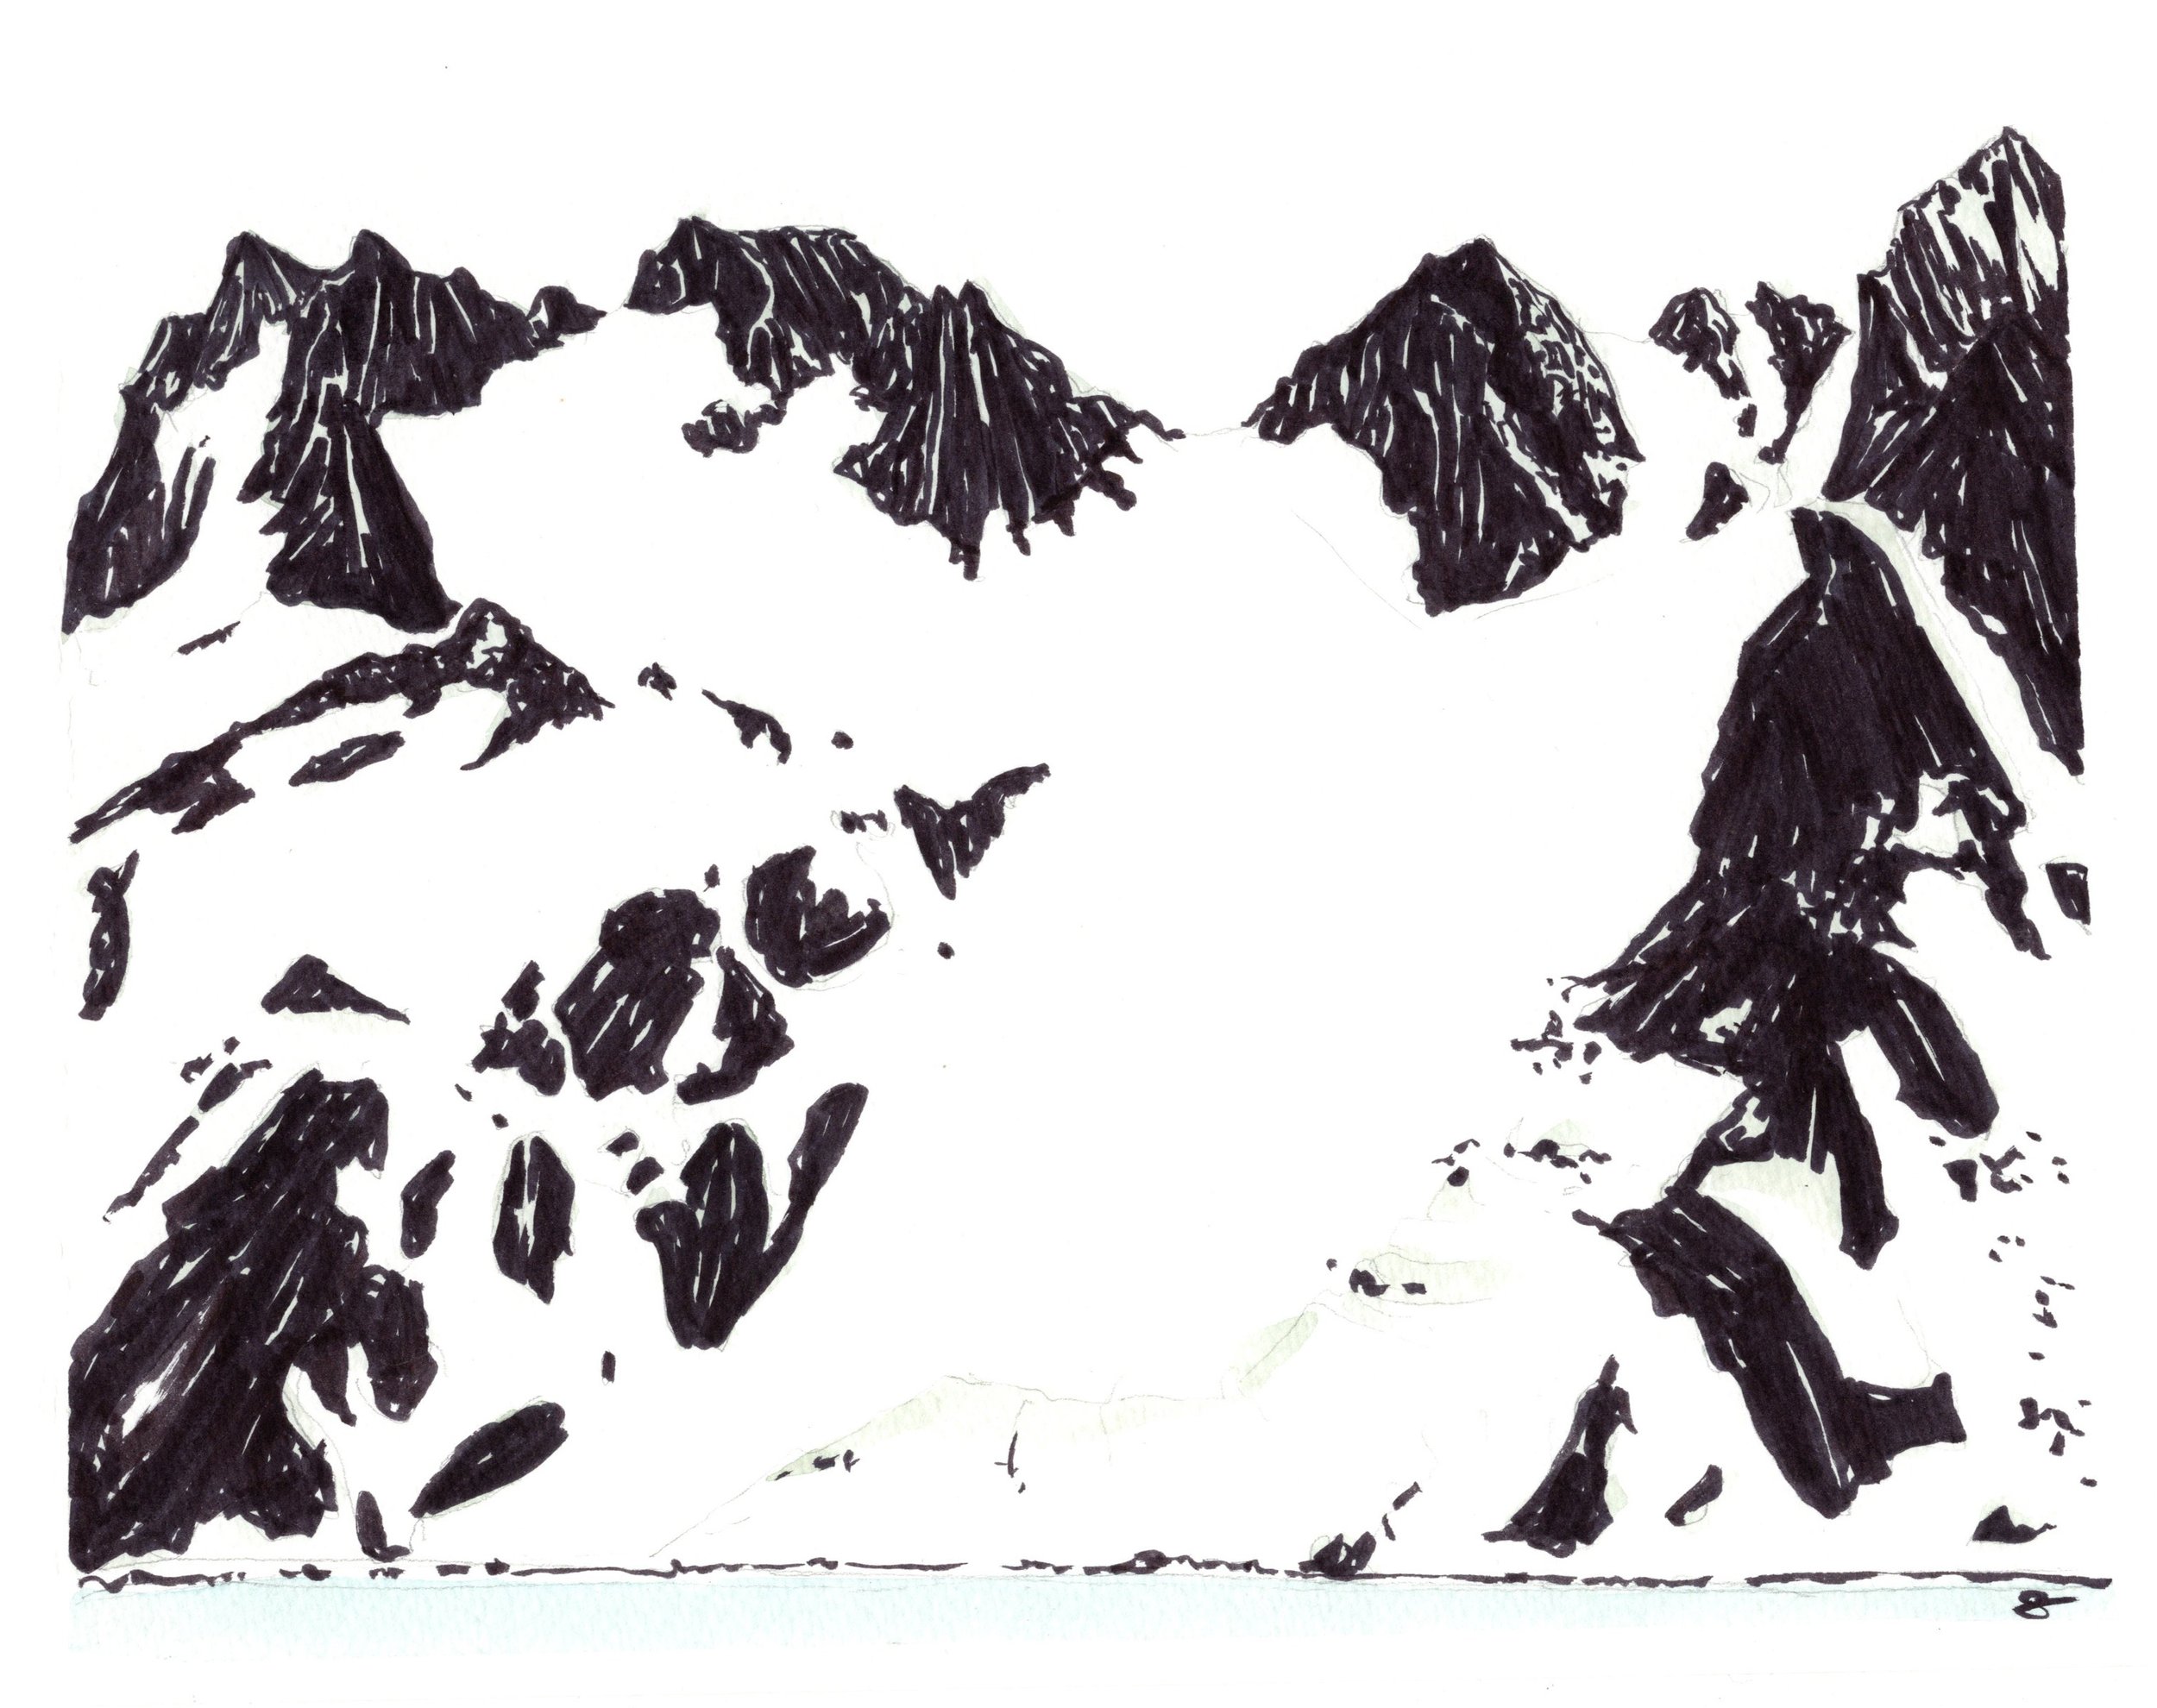 Arctic Landscape No. III